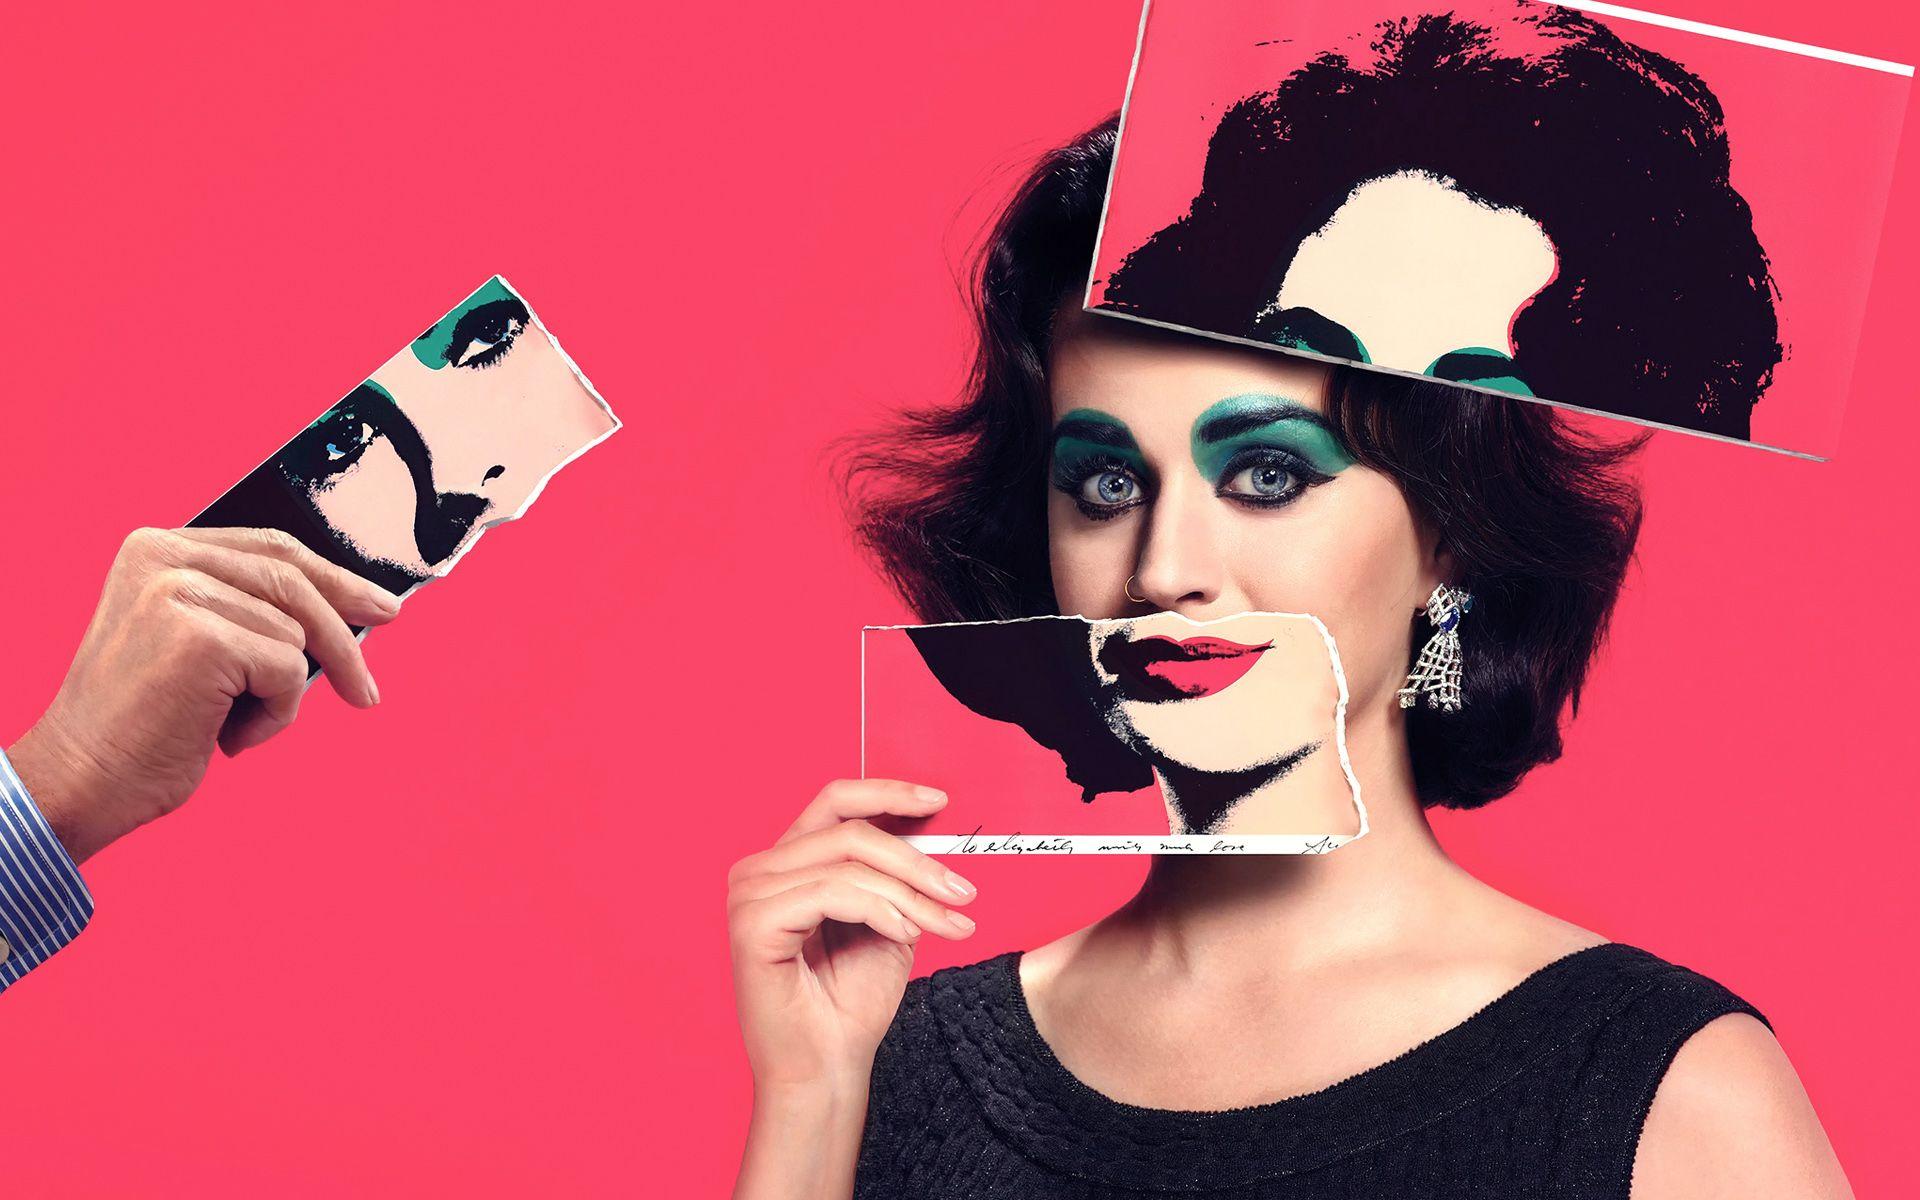 Katy Perry as Elizabeth Taylor Wallpaper